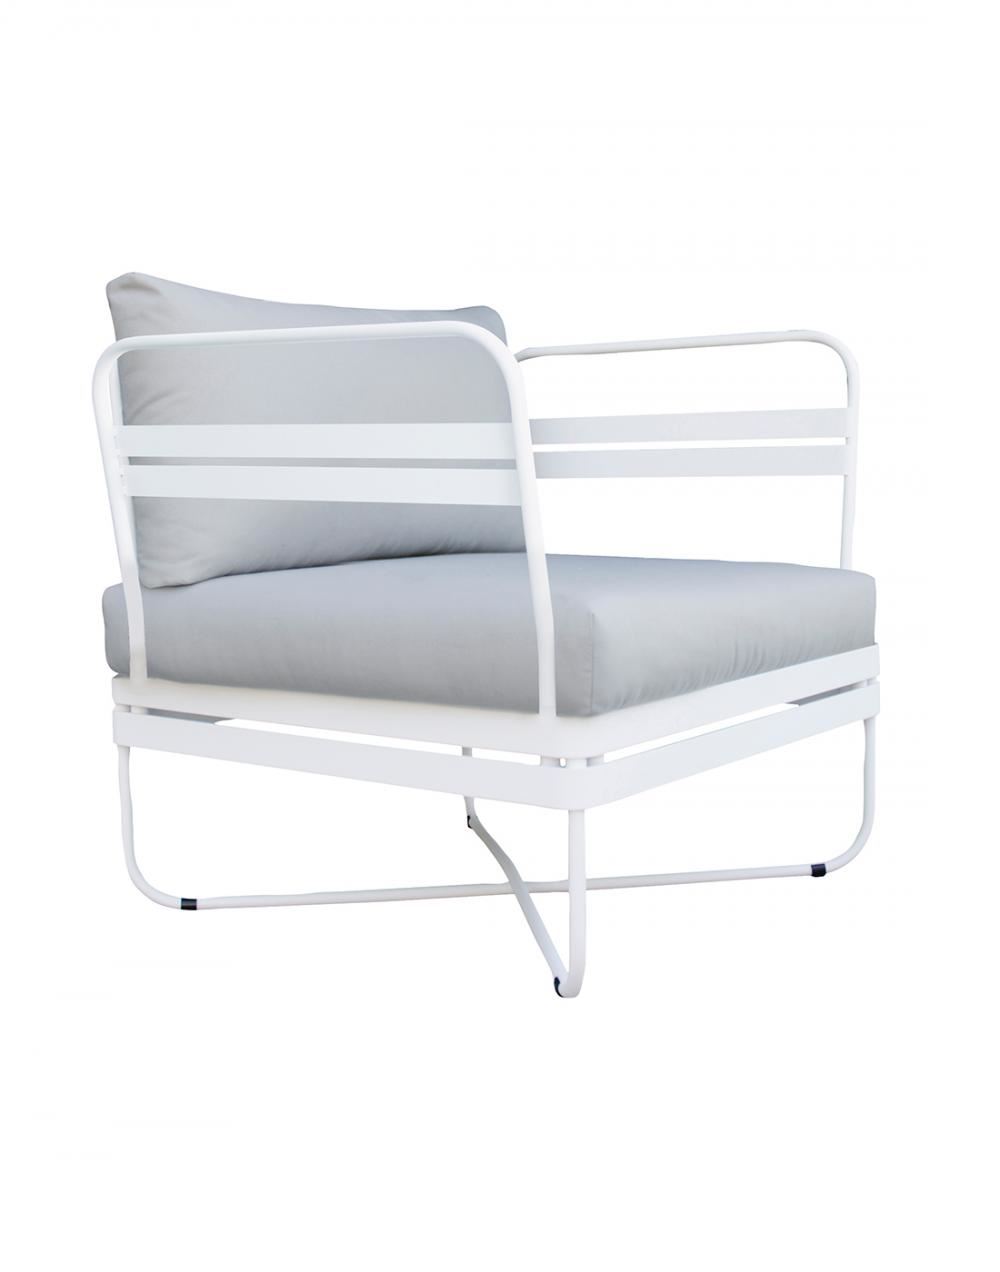 Bris Outdoor Chair White Outdoor Chair Dark Grey